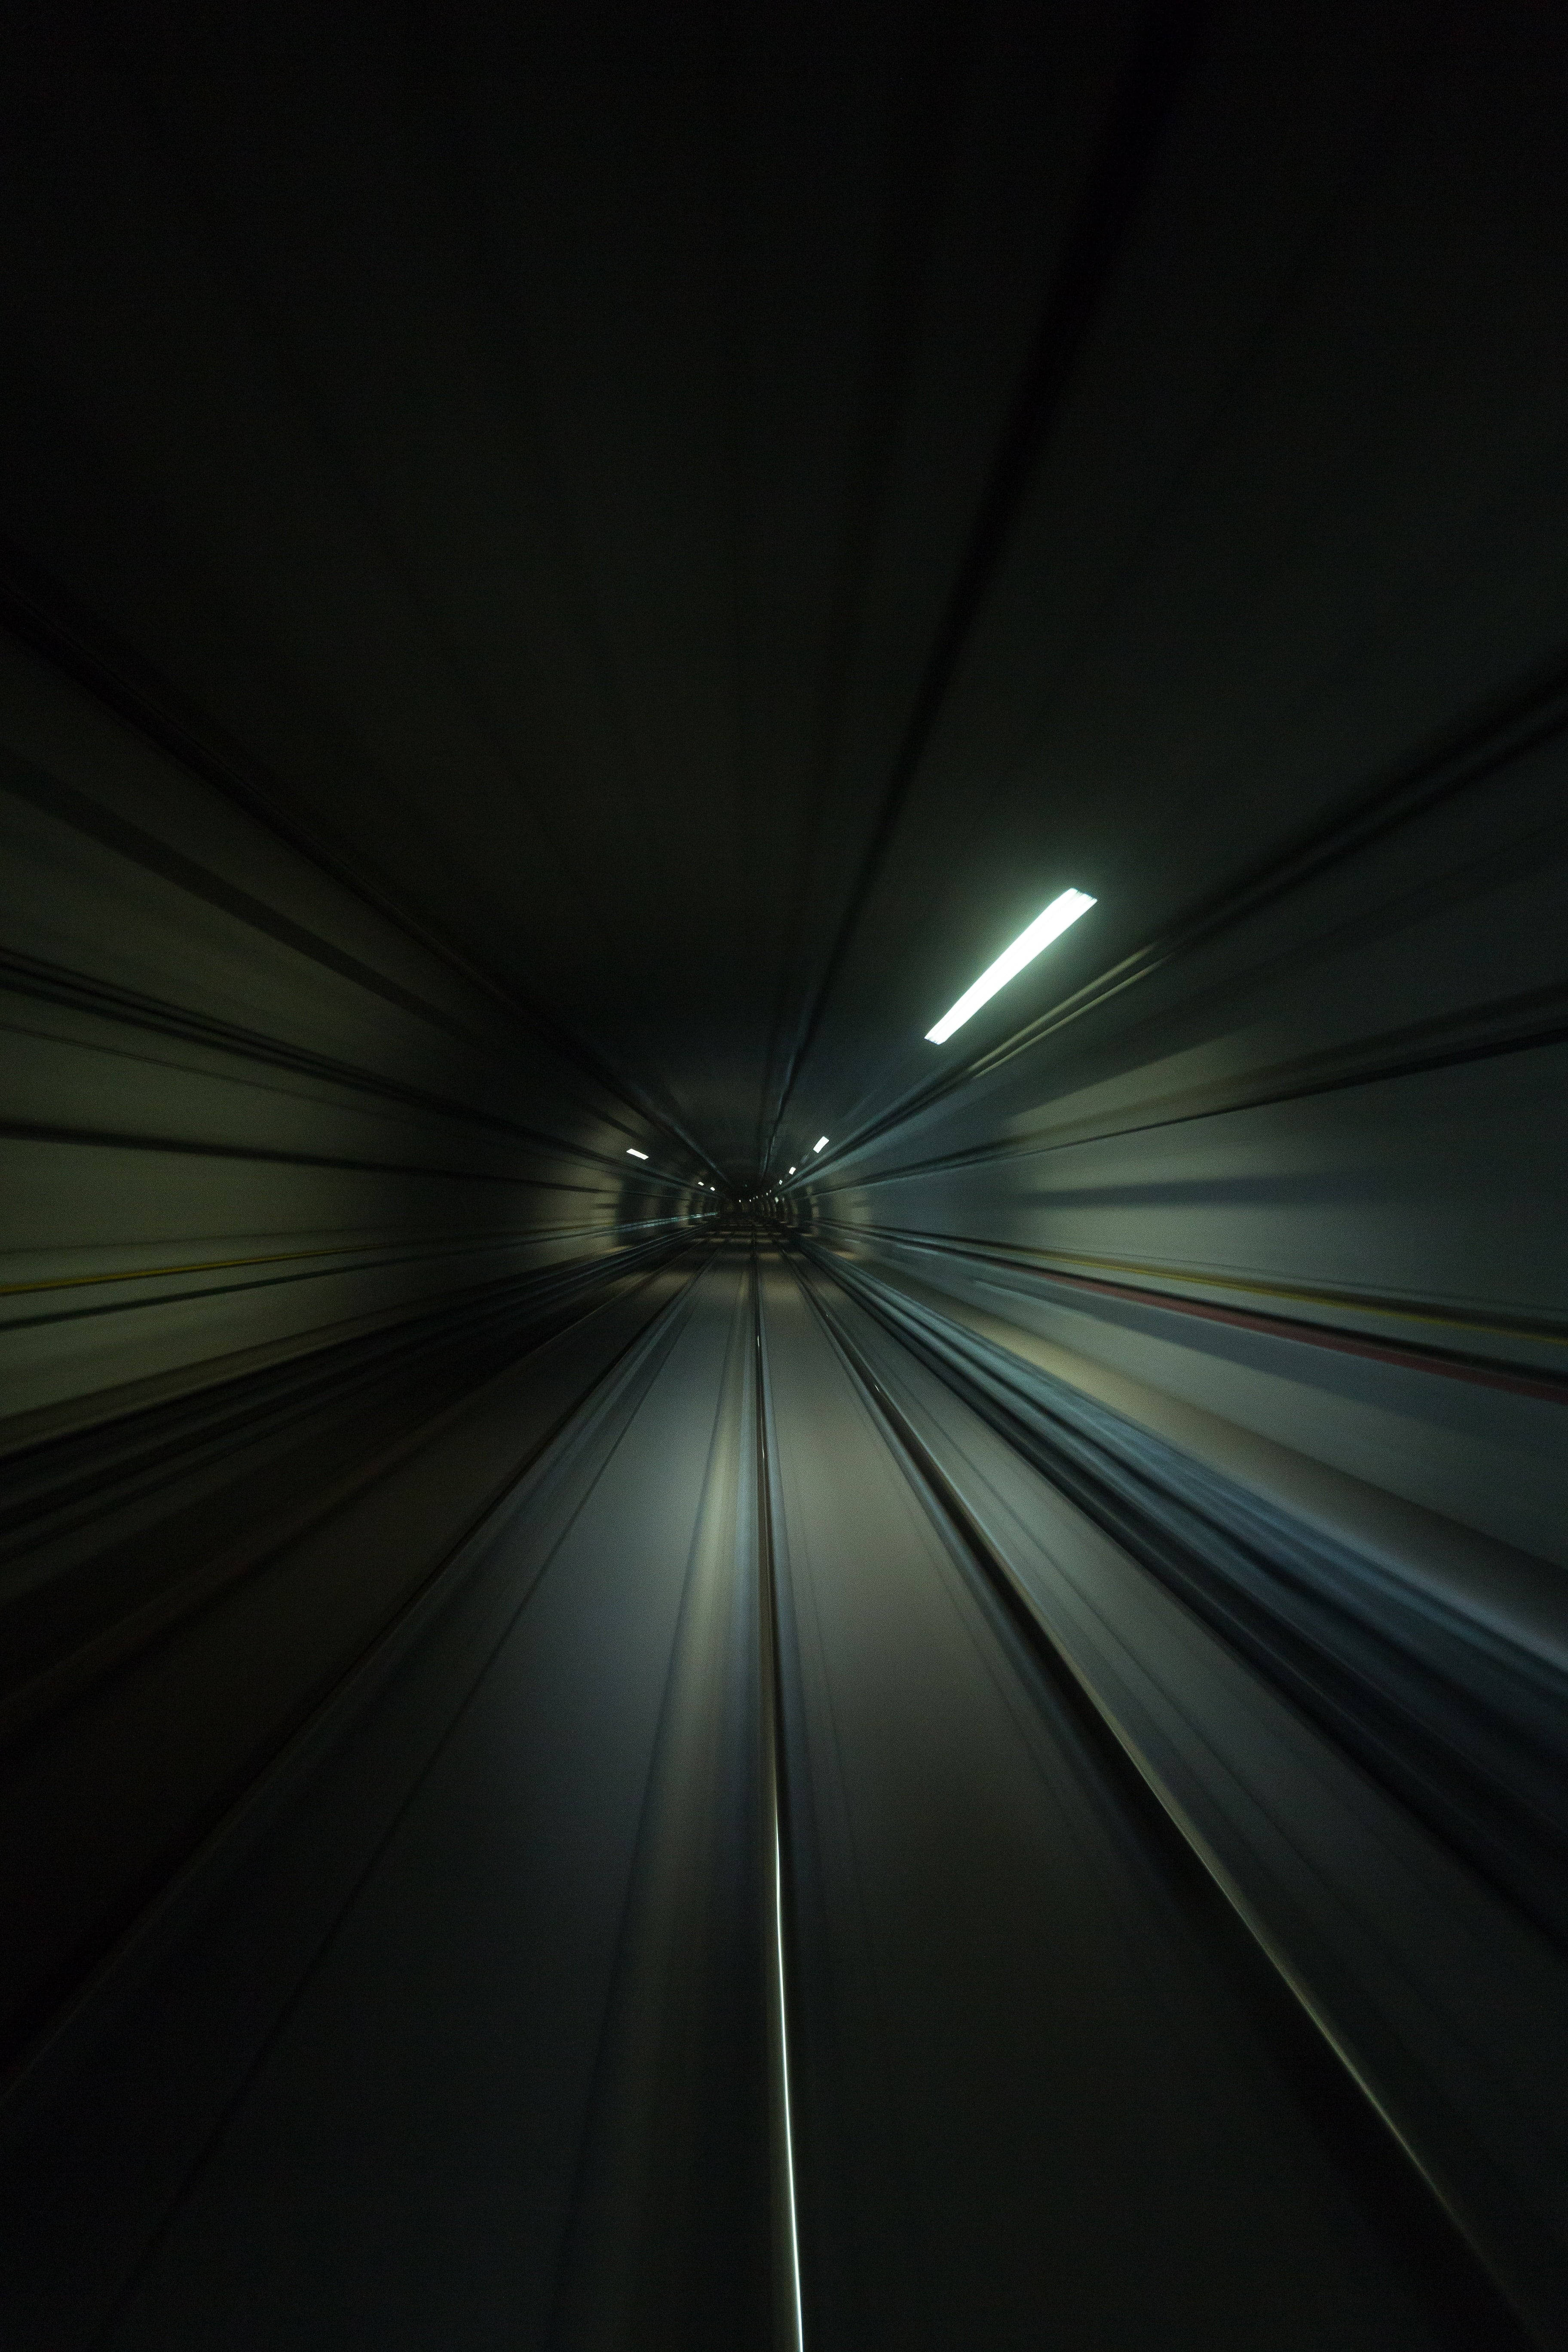 прохождение туннеля на высокой скорости iphone